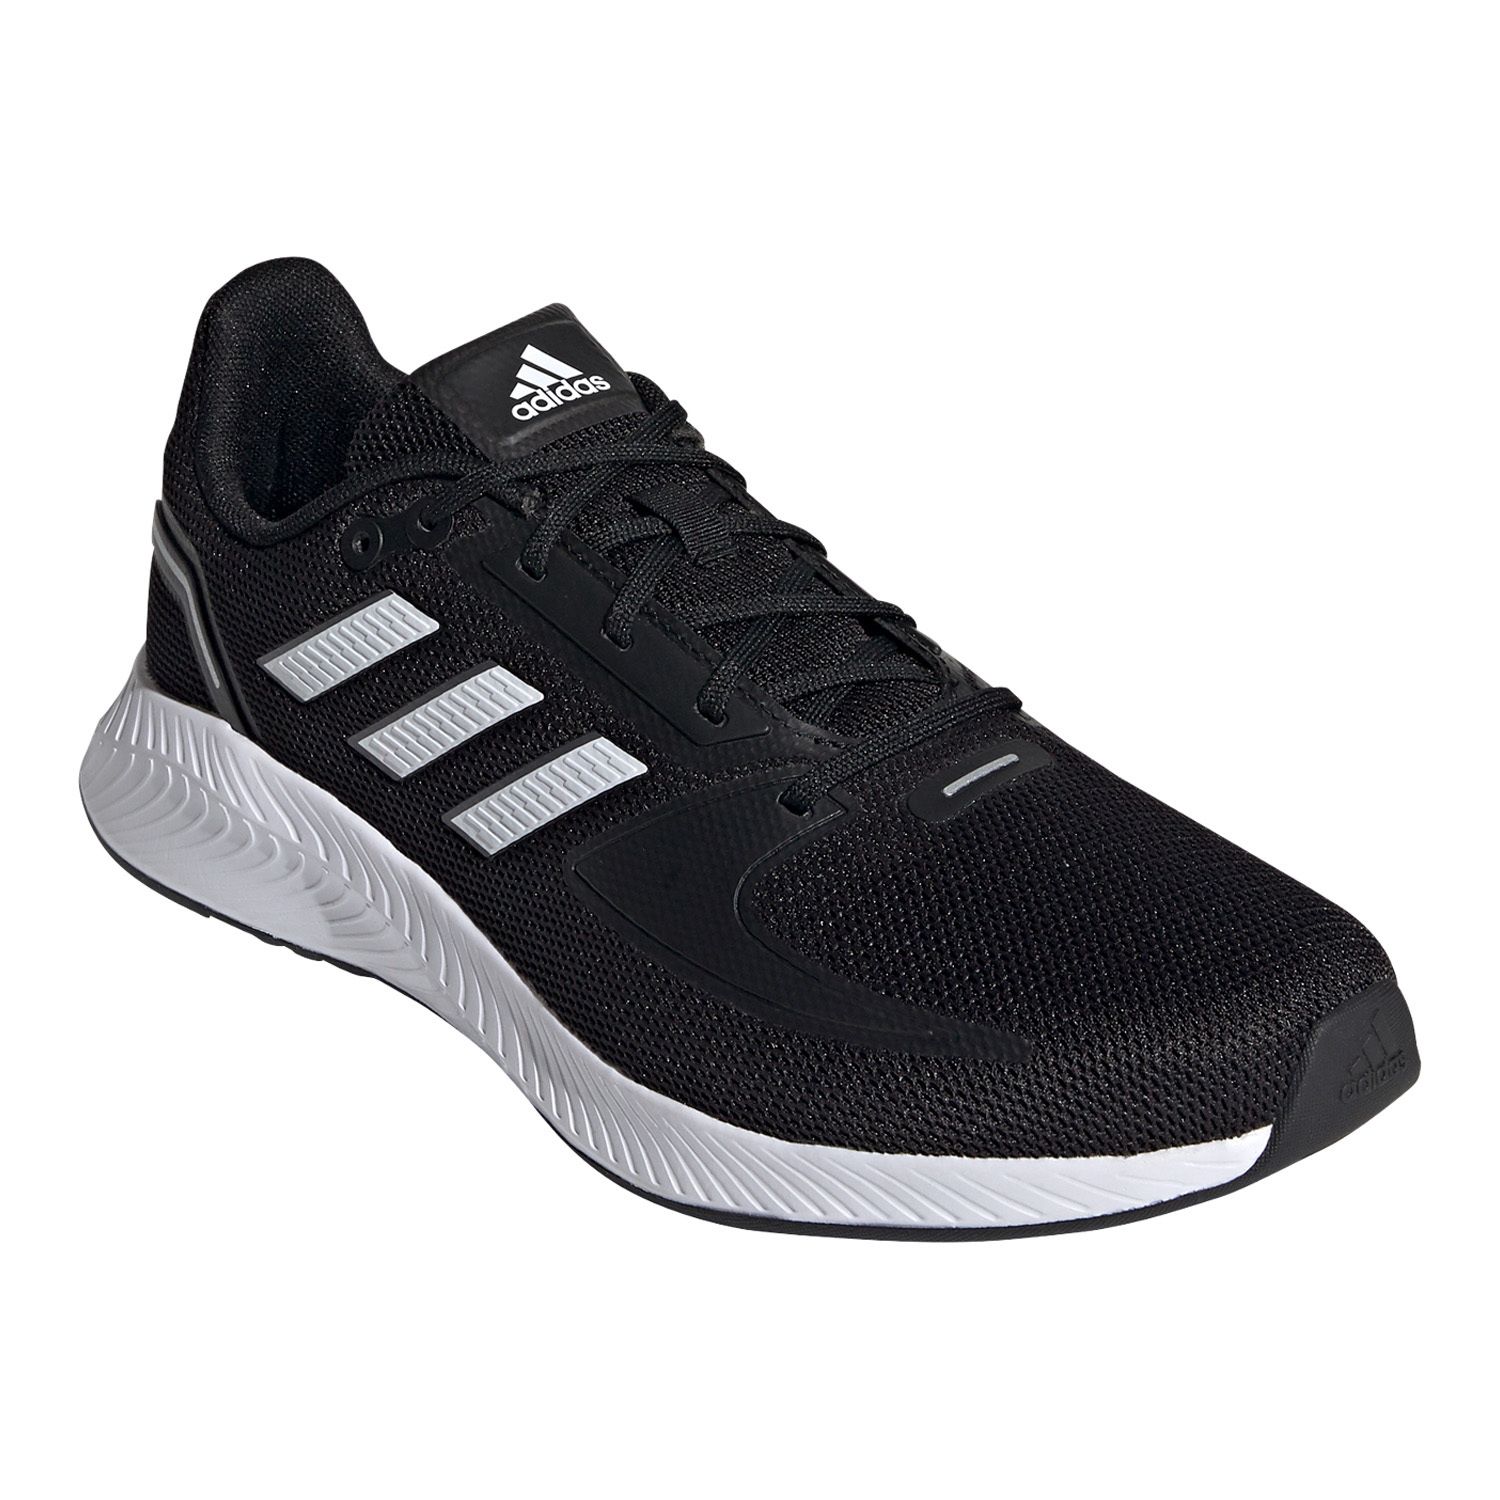 Mens Black Adidas Shoes | Kohl's